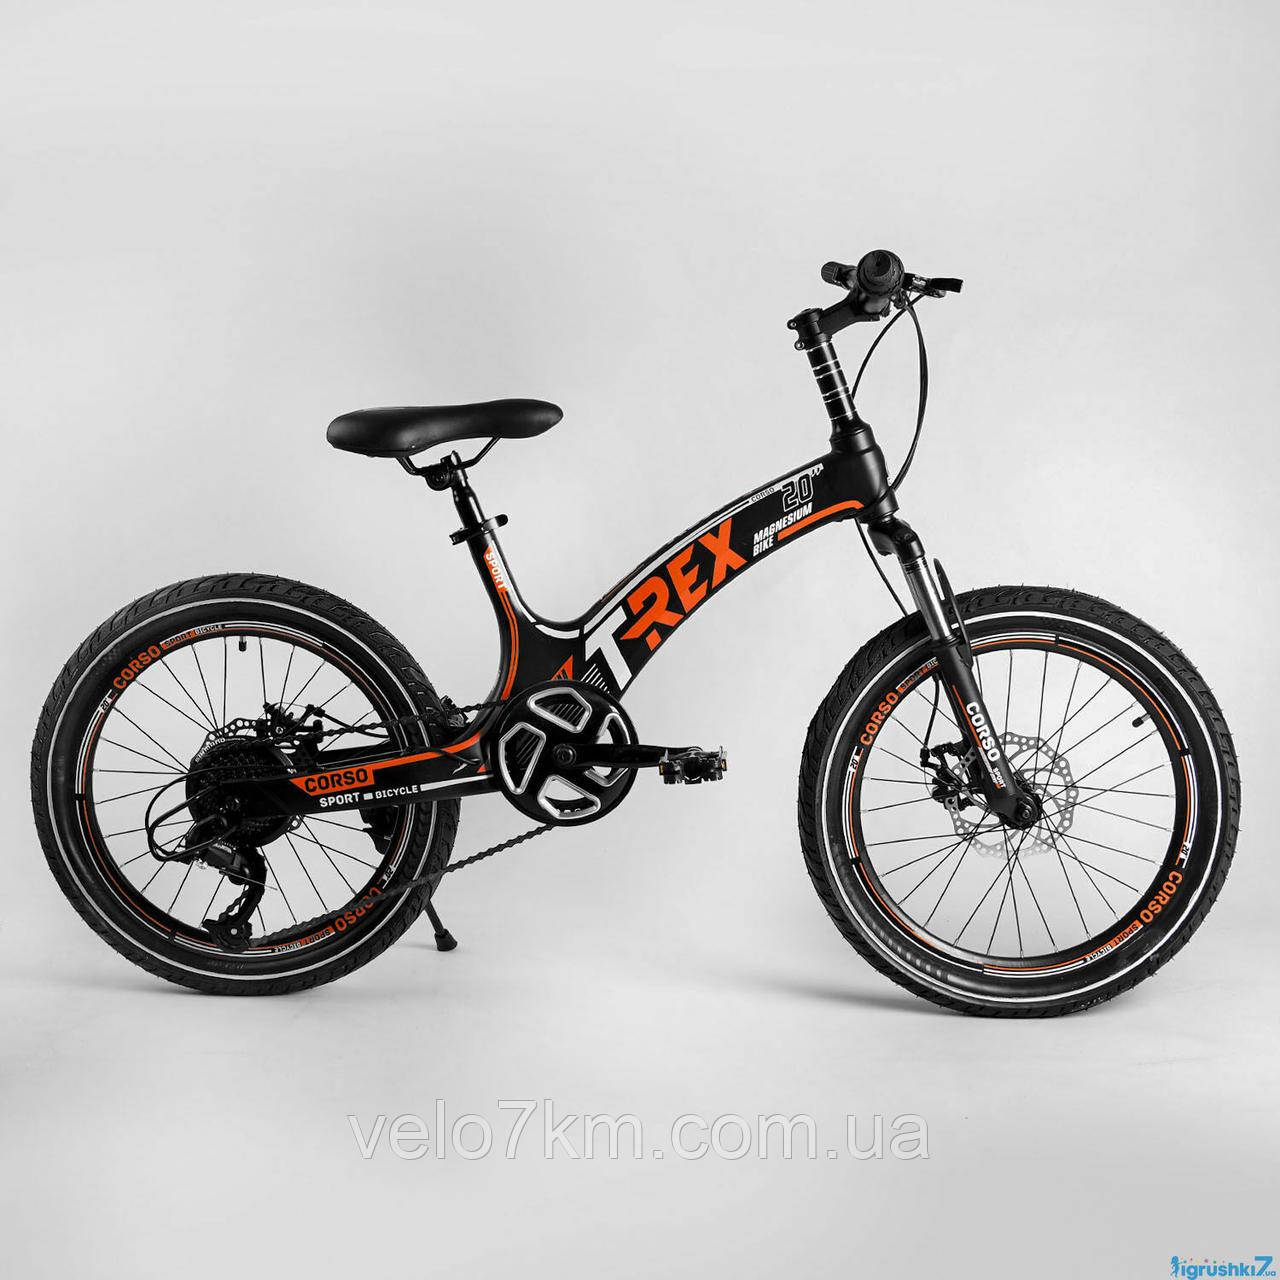 Дитячий спортивний велосипед CORSO "T-REX" 20" магнієва рама, обладнання MicroShift, 7 швидкостей, в коробці